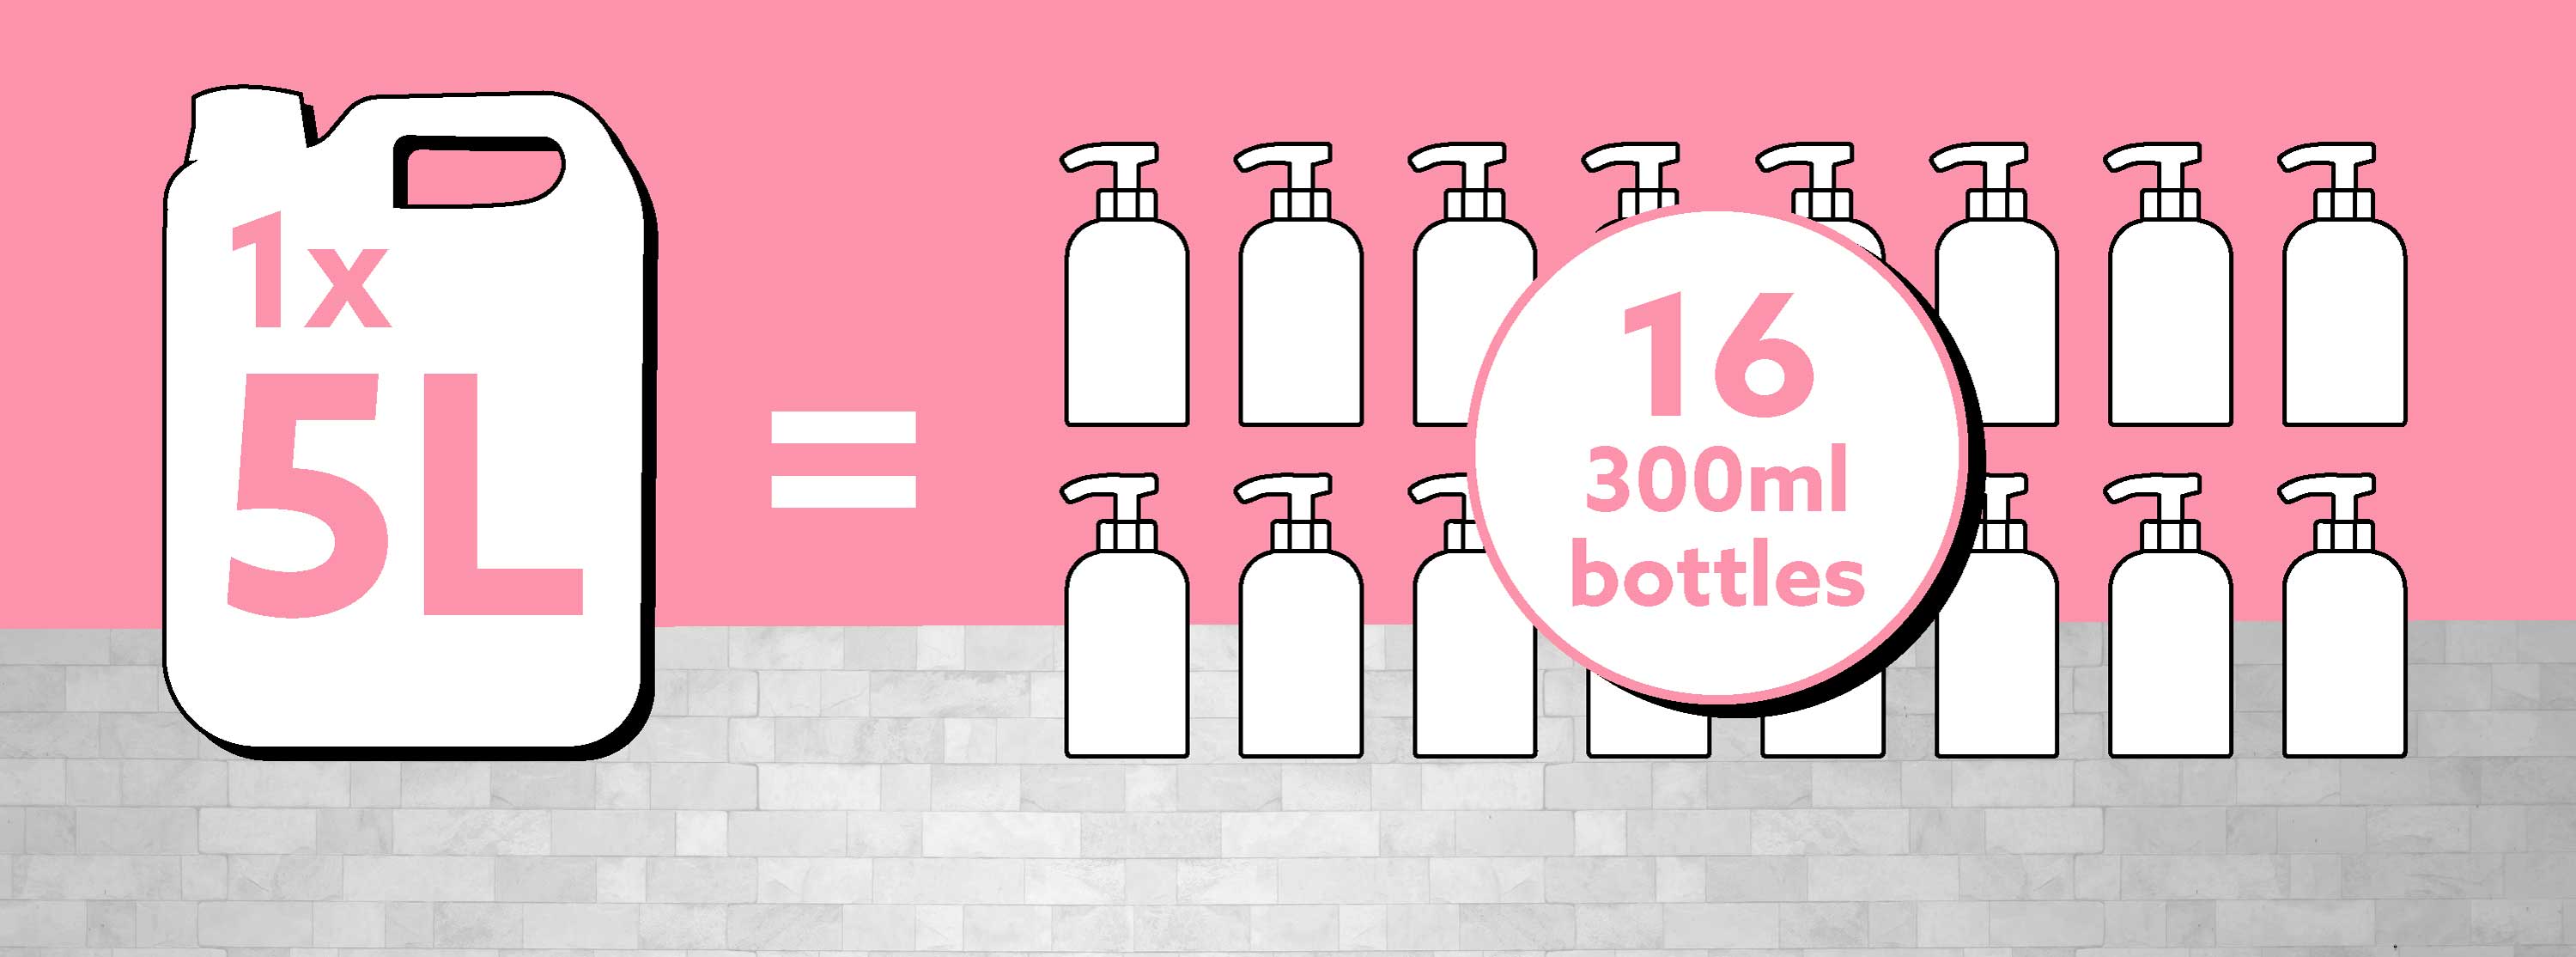 Refillable Toiletries vs Bottles